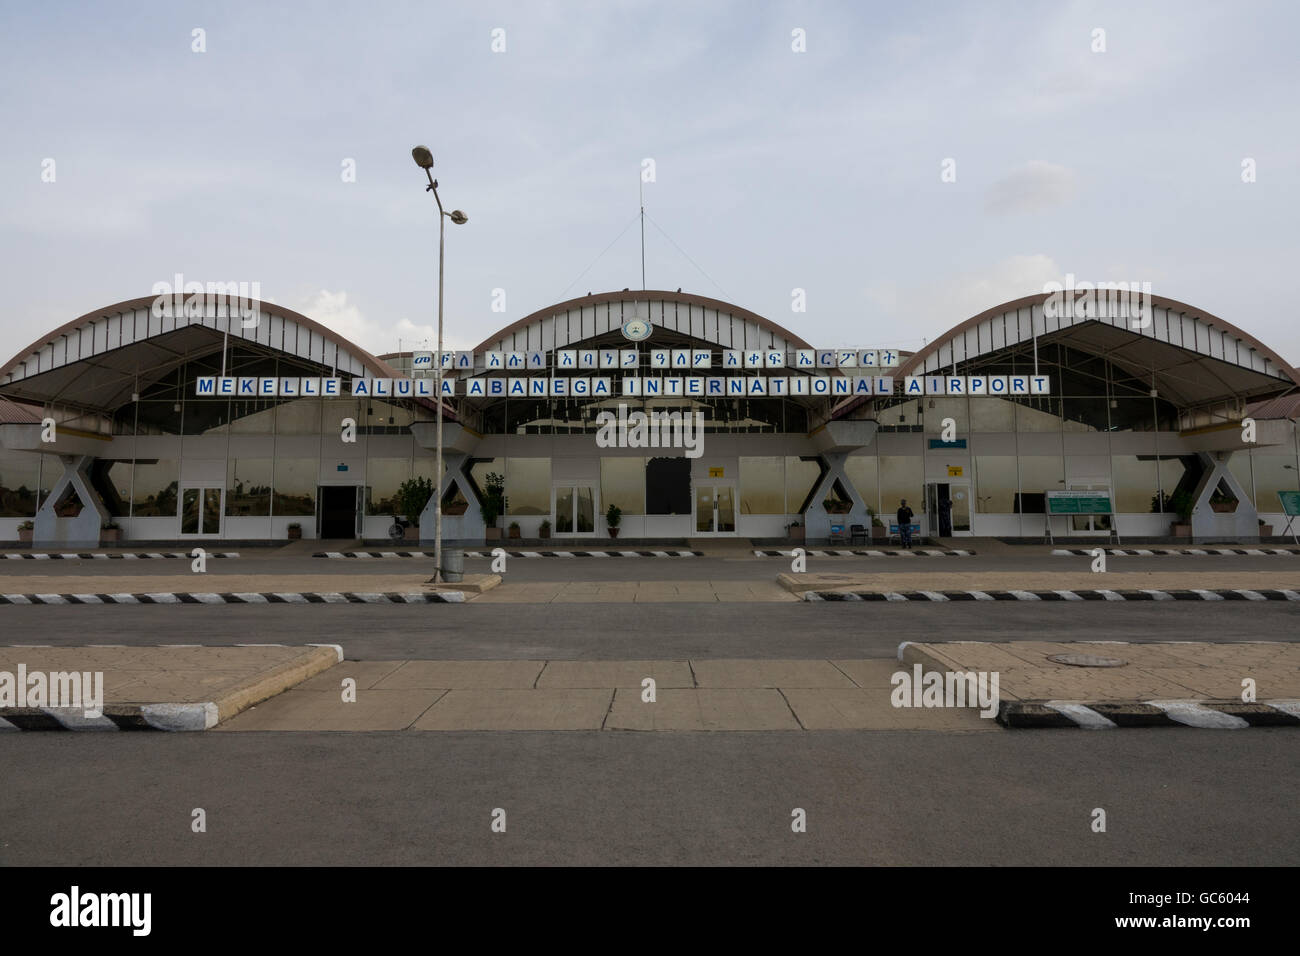 The quiet airport terminal in Makele (Mek'ele), Ethiopia Stock Photo